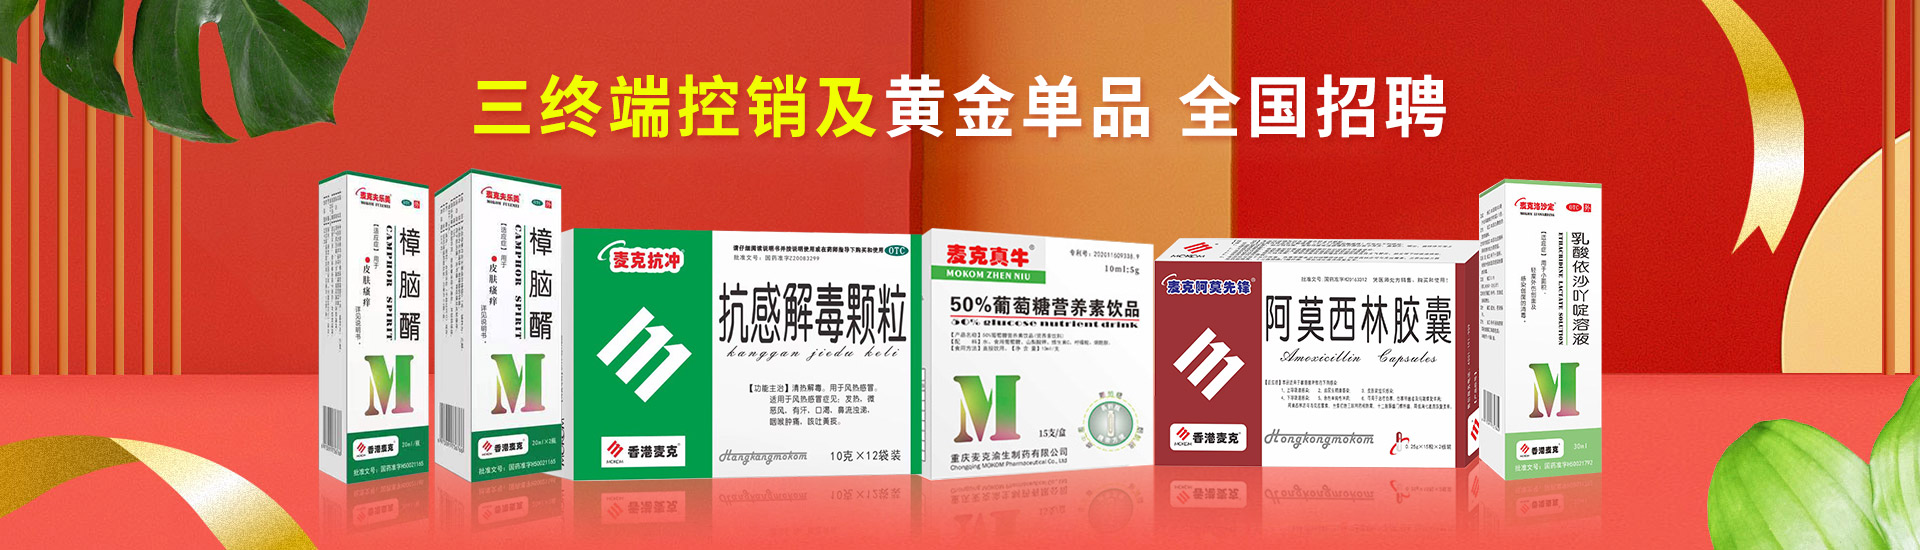 香港麦克集团药业有限公司